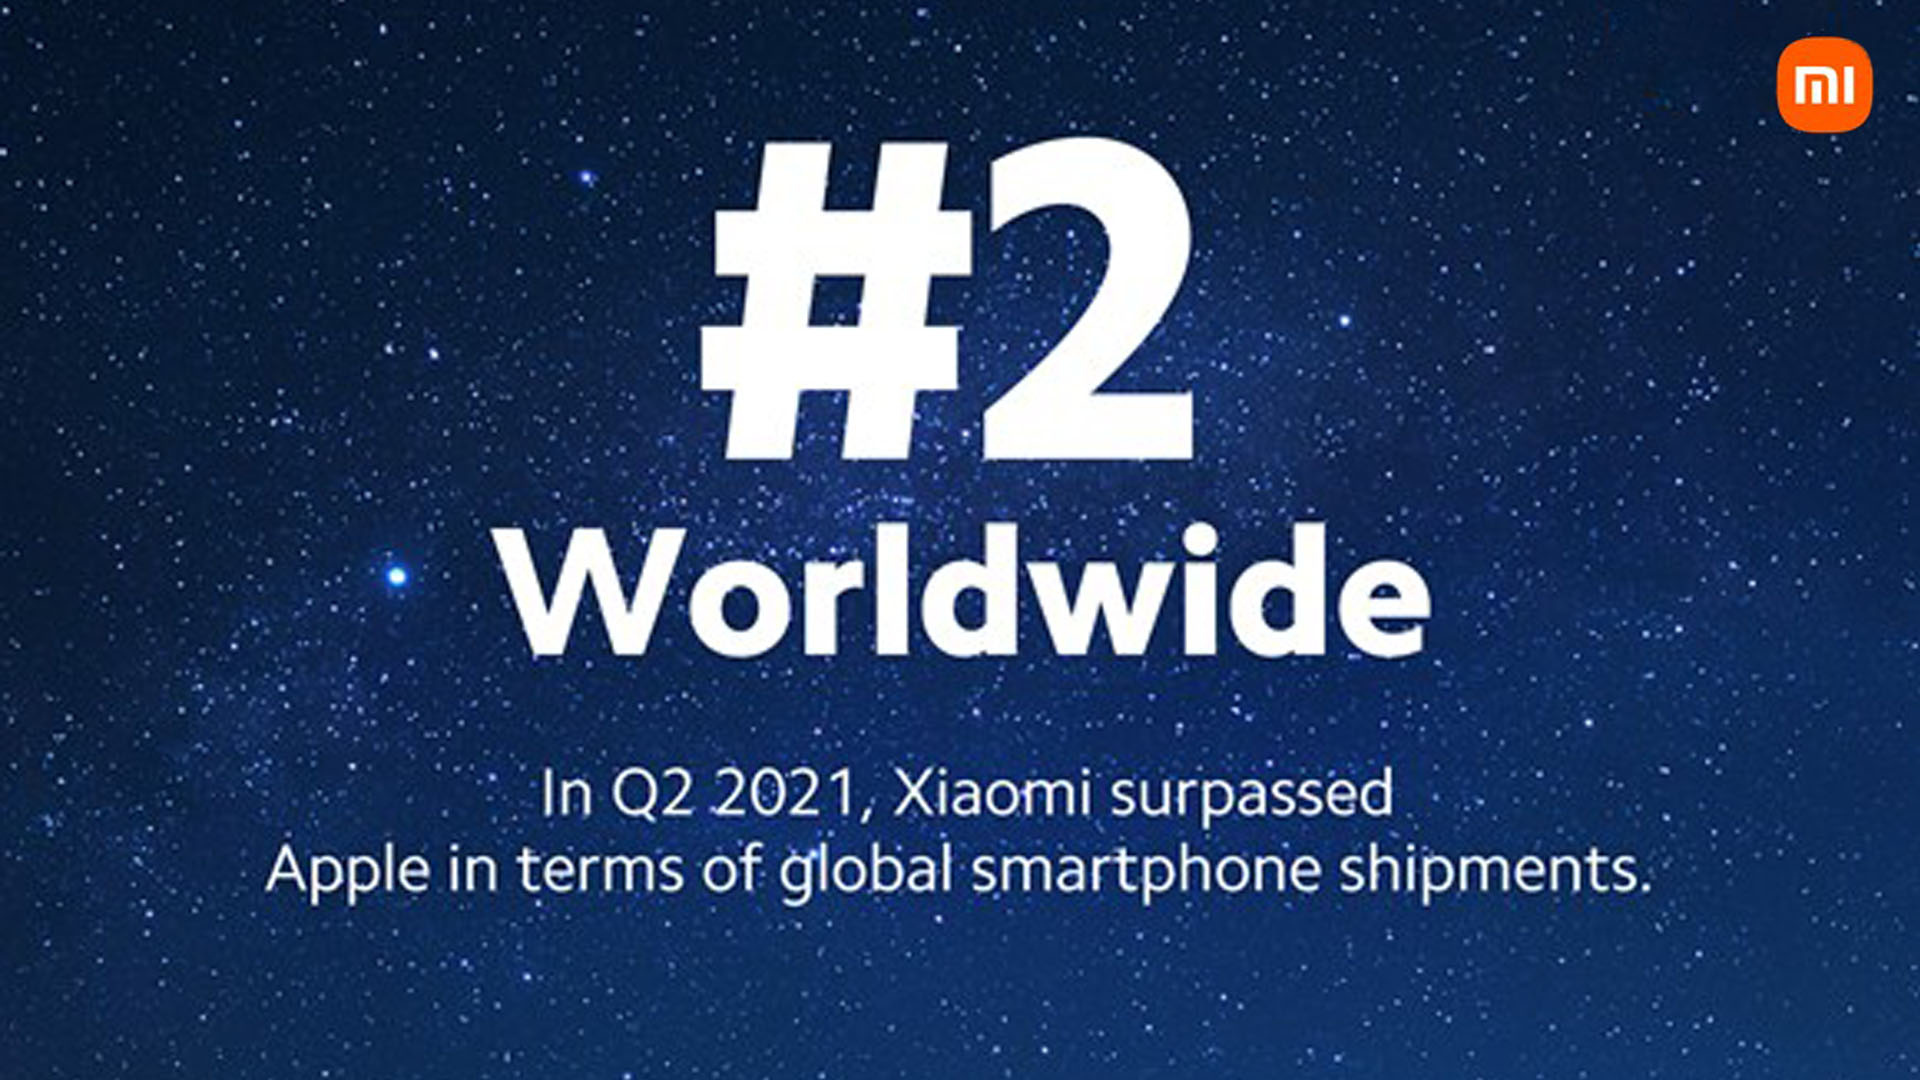 Xiaomi ก้าวขึ้นเป็นผู้ผลิตสมาร์ตโฟนที่มีส่วนแบ่งการตลาดอันดับที่ 2 ของโลกเป็นครั้งแรก